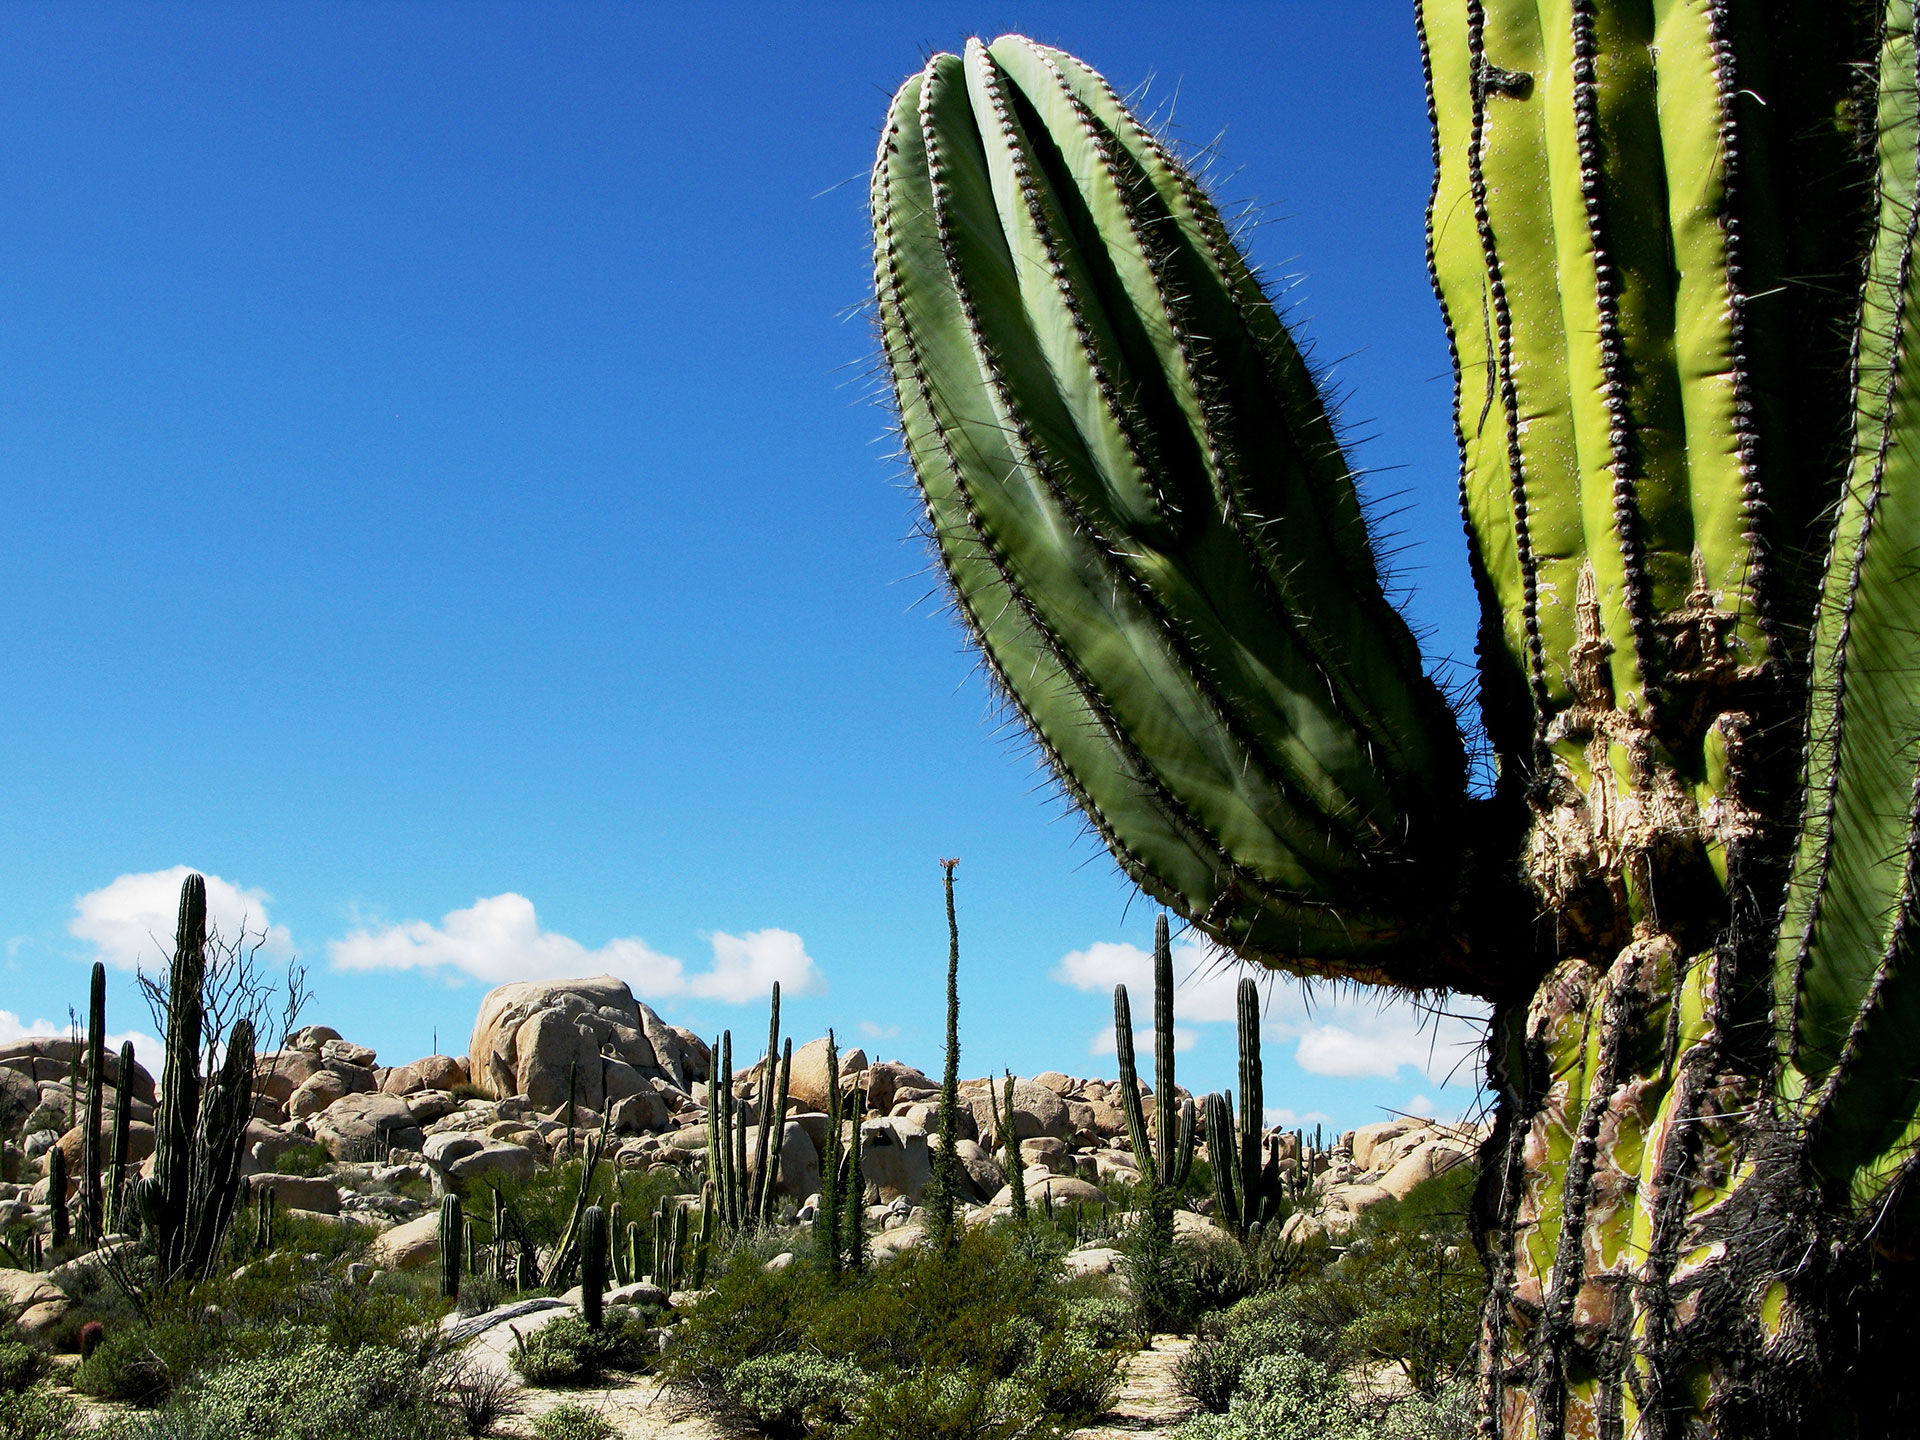 Cactuses in Baja Mexico